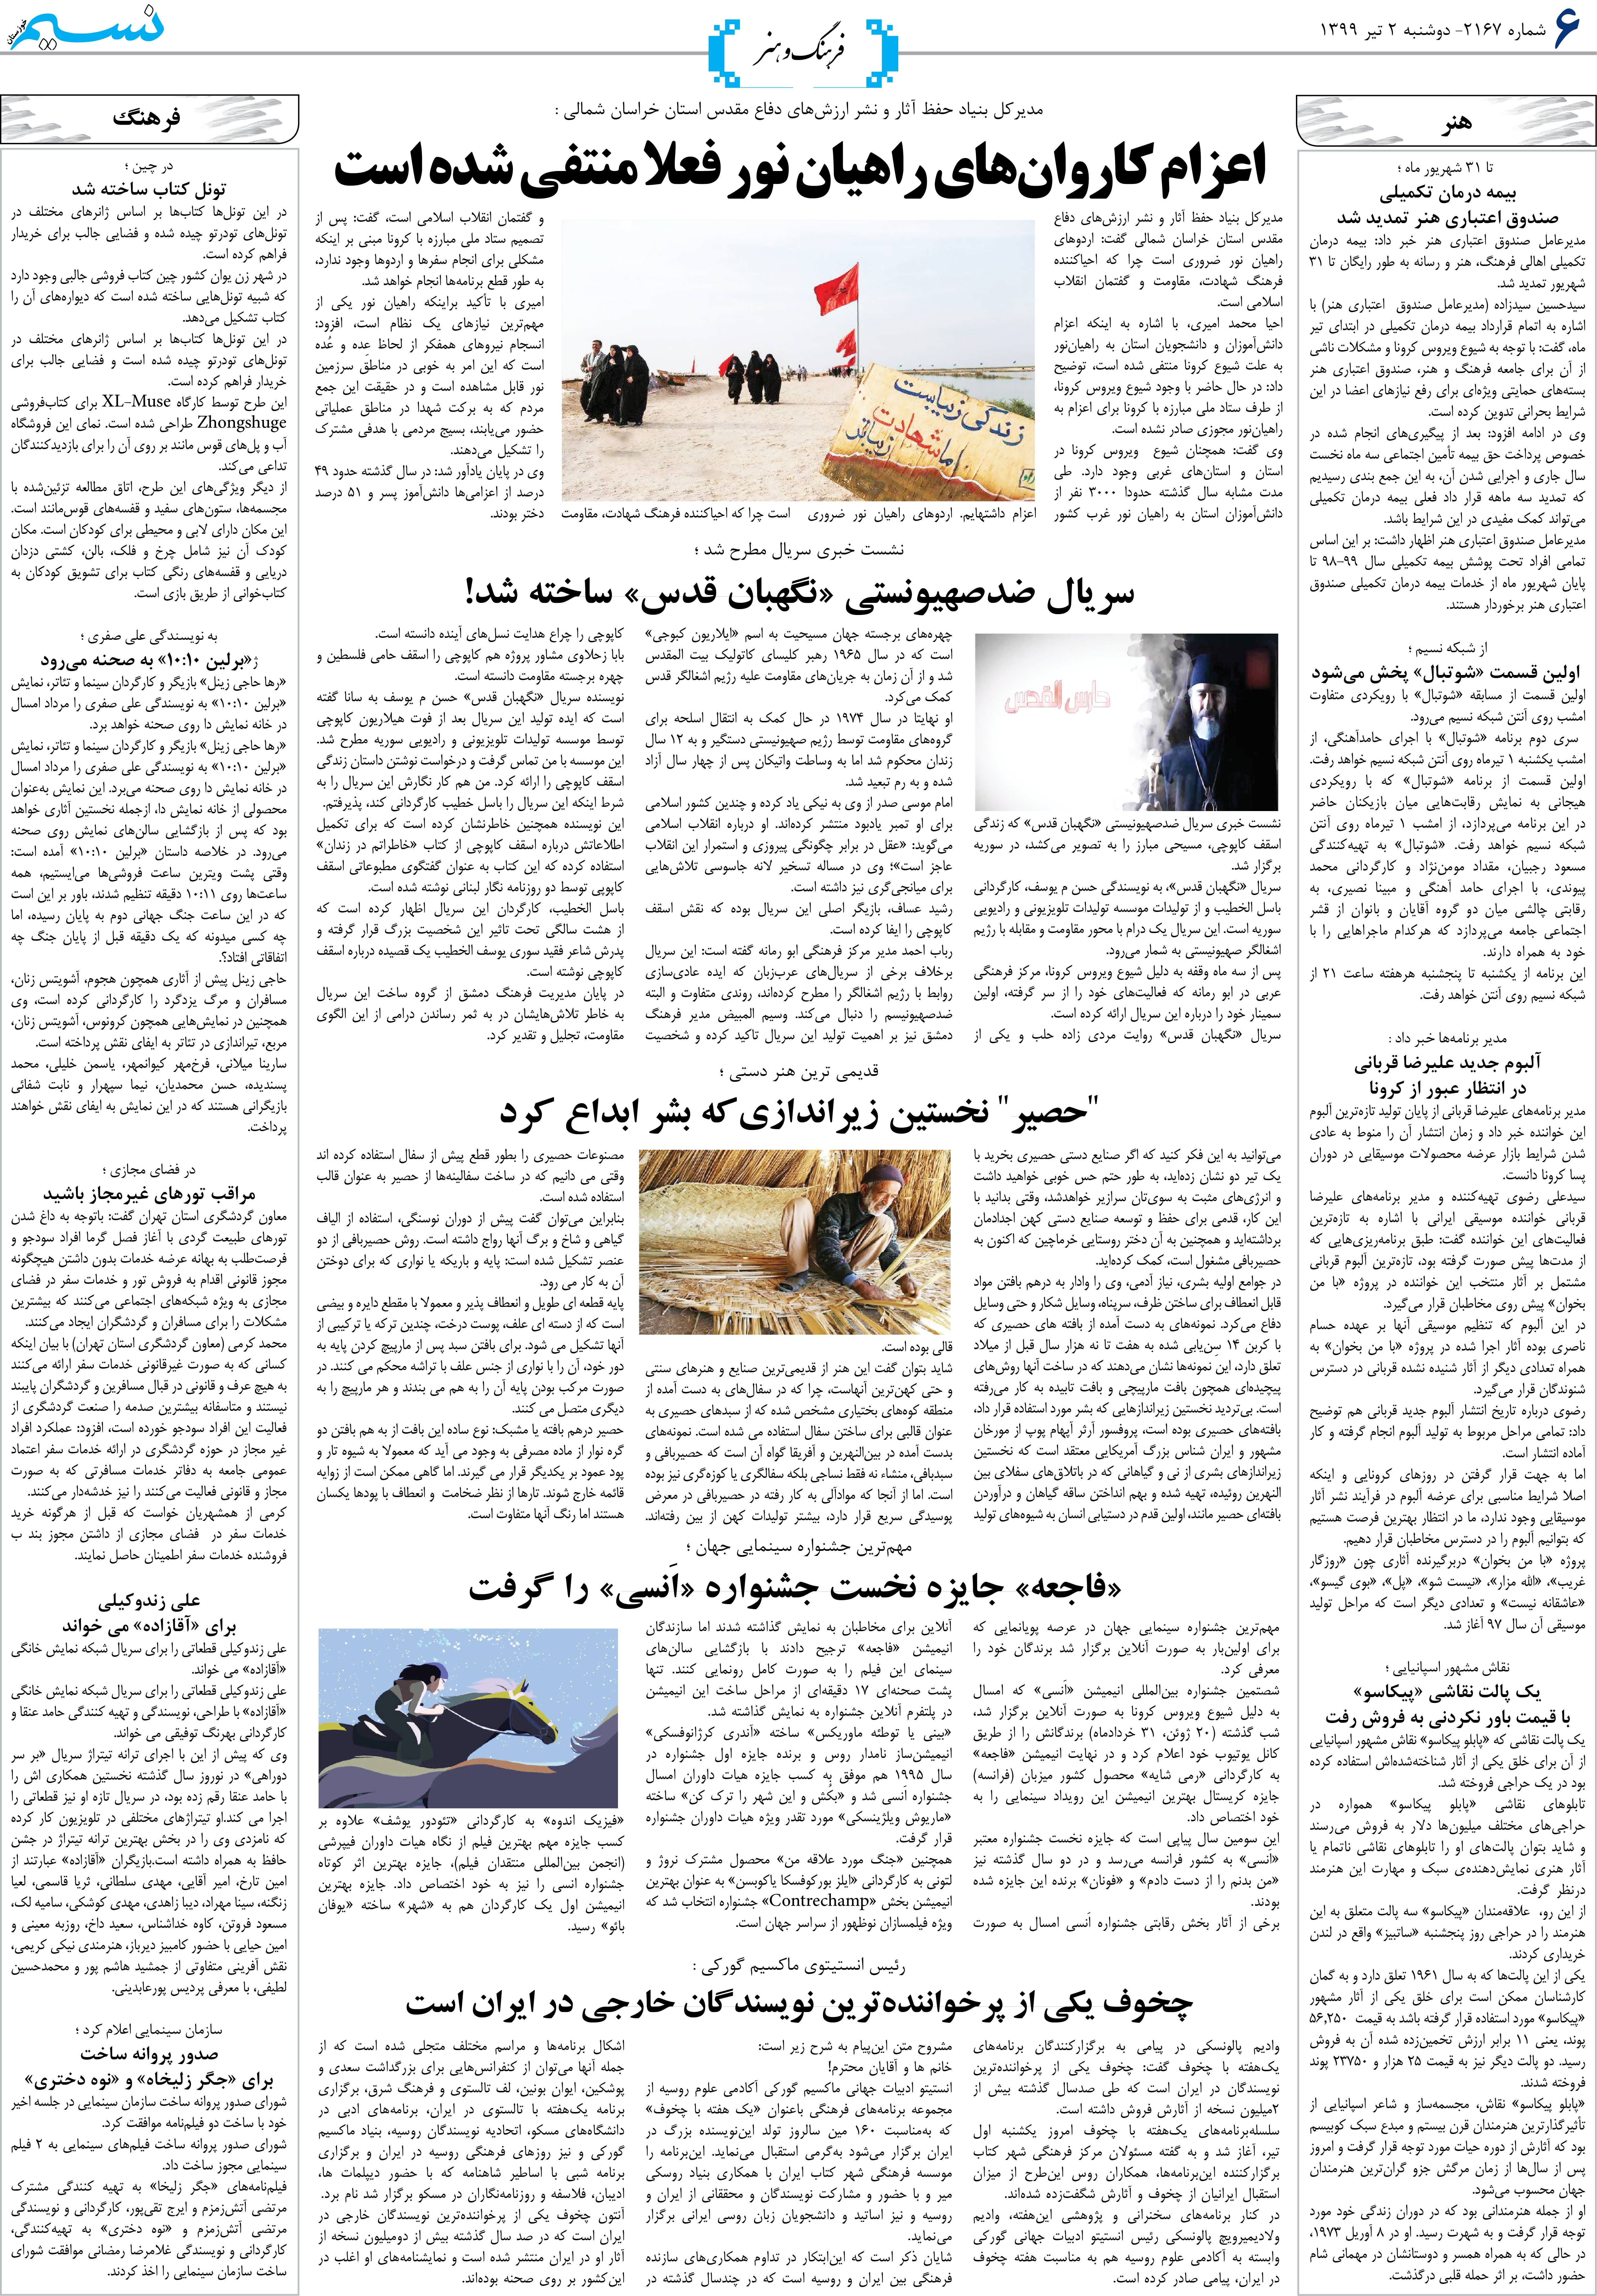 صفحه فرهنگ و هنر روزنامه نسیم شماره 2167